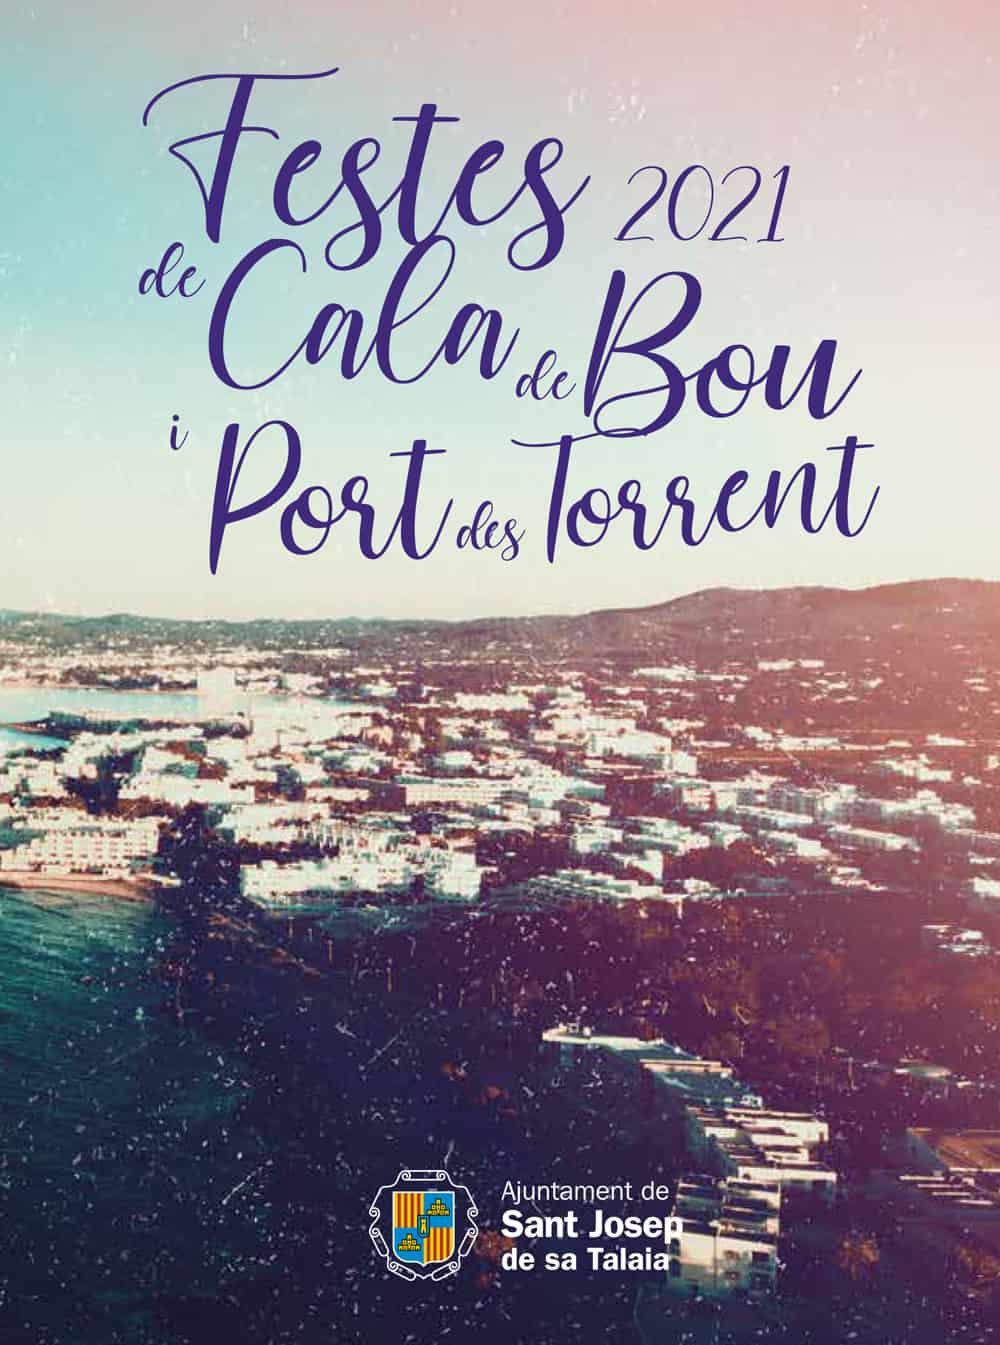 fêtes-de-cala-de-bou-et-port-des-torrent-ibiza-2021-welcometoibiza